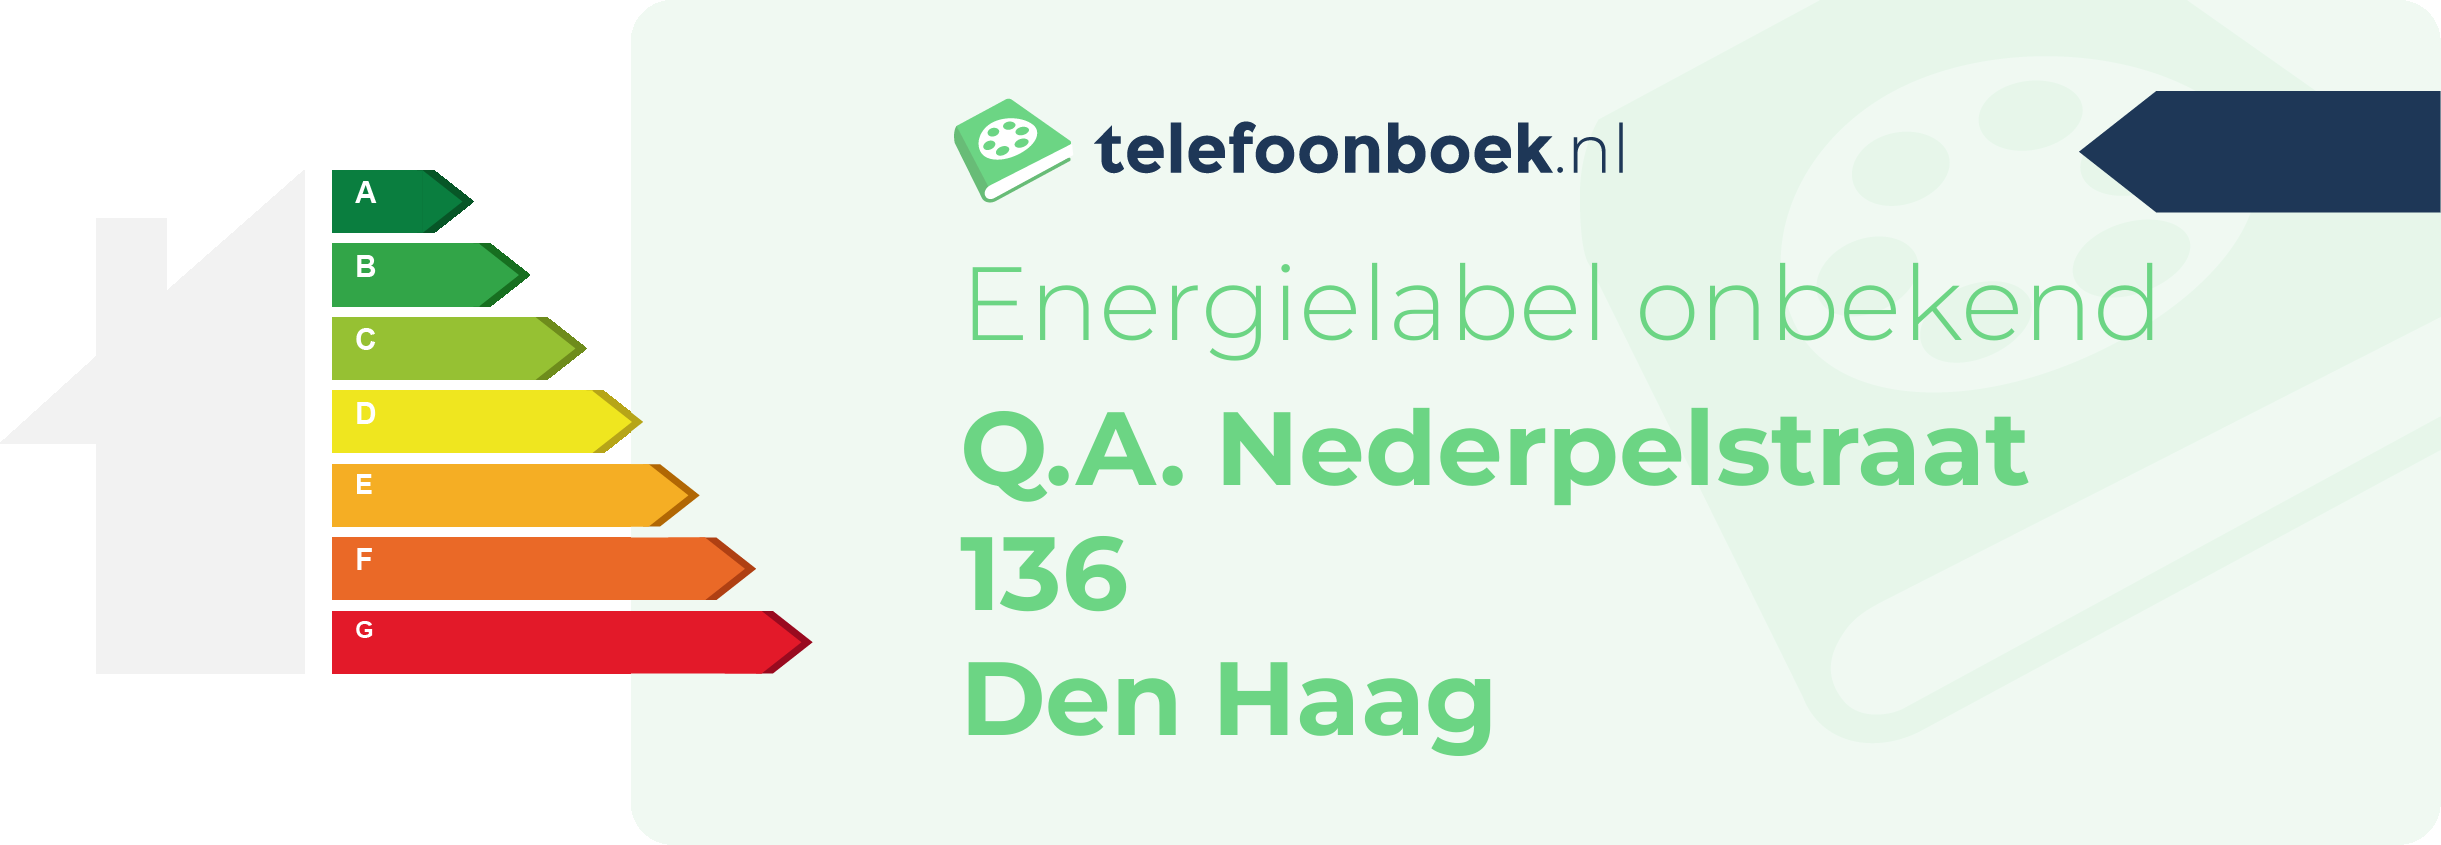 Energielabel Q.A. Nederpelstraat 136 Den Haag